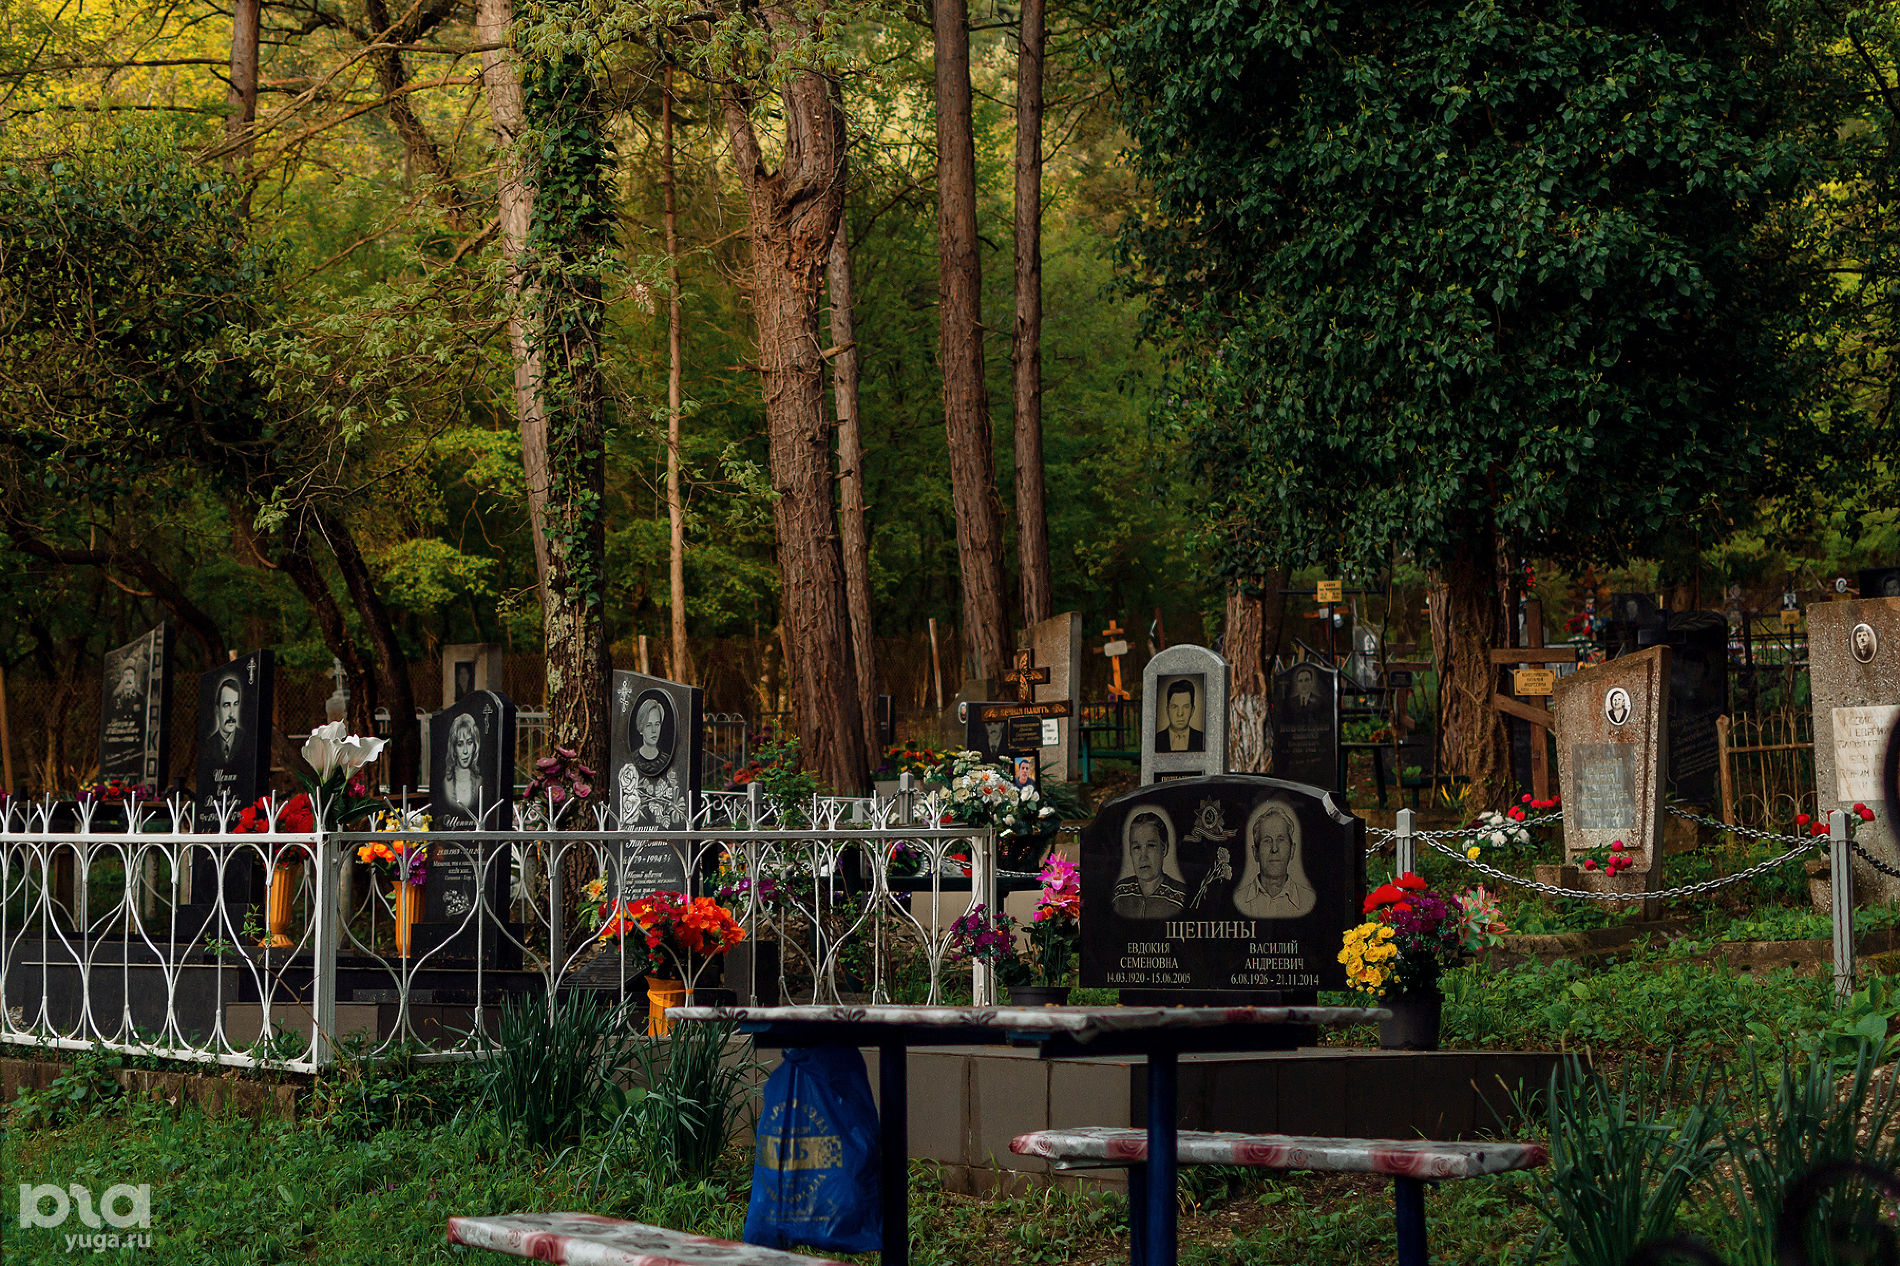 Джанхотское кладбище © Фото Юли Шафаростовой, Юга.ру